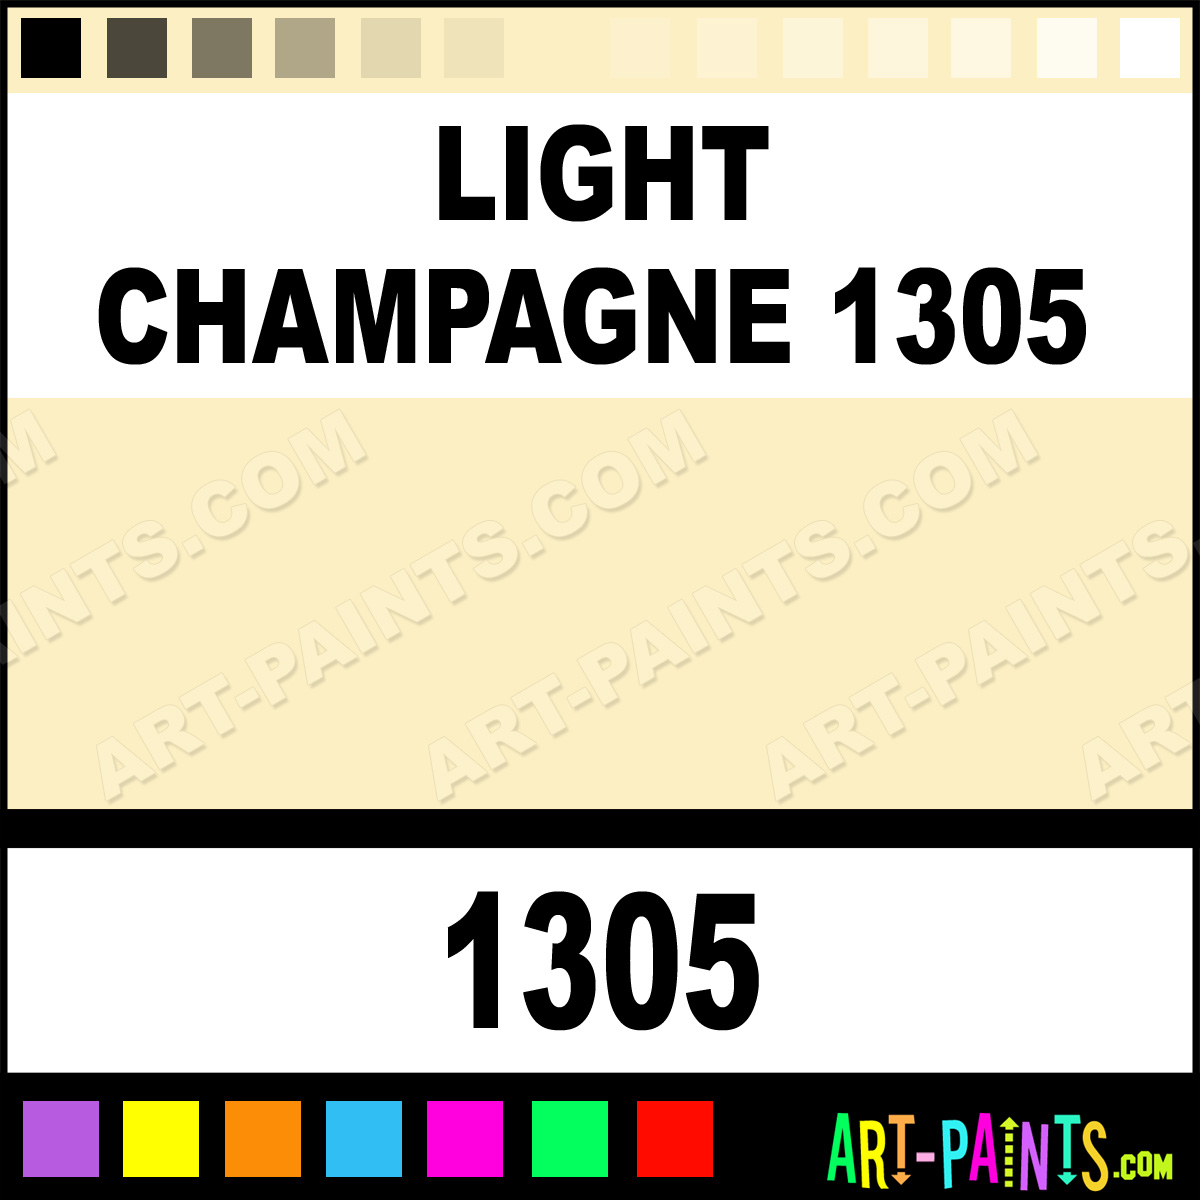 Light-Champagne-1305-lg.jpg